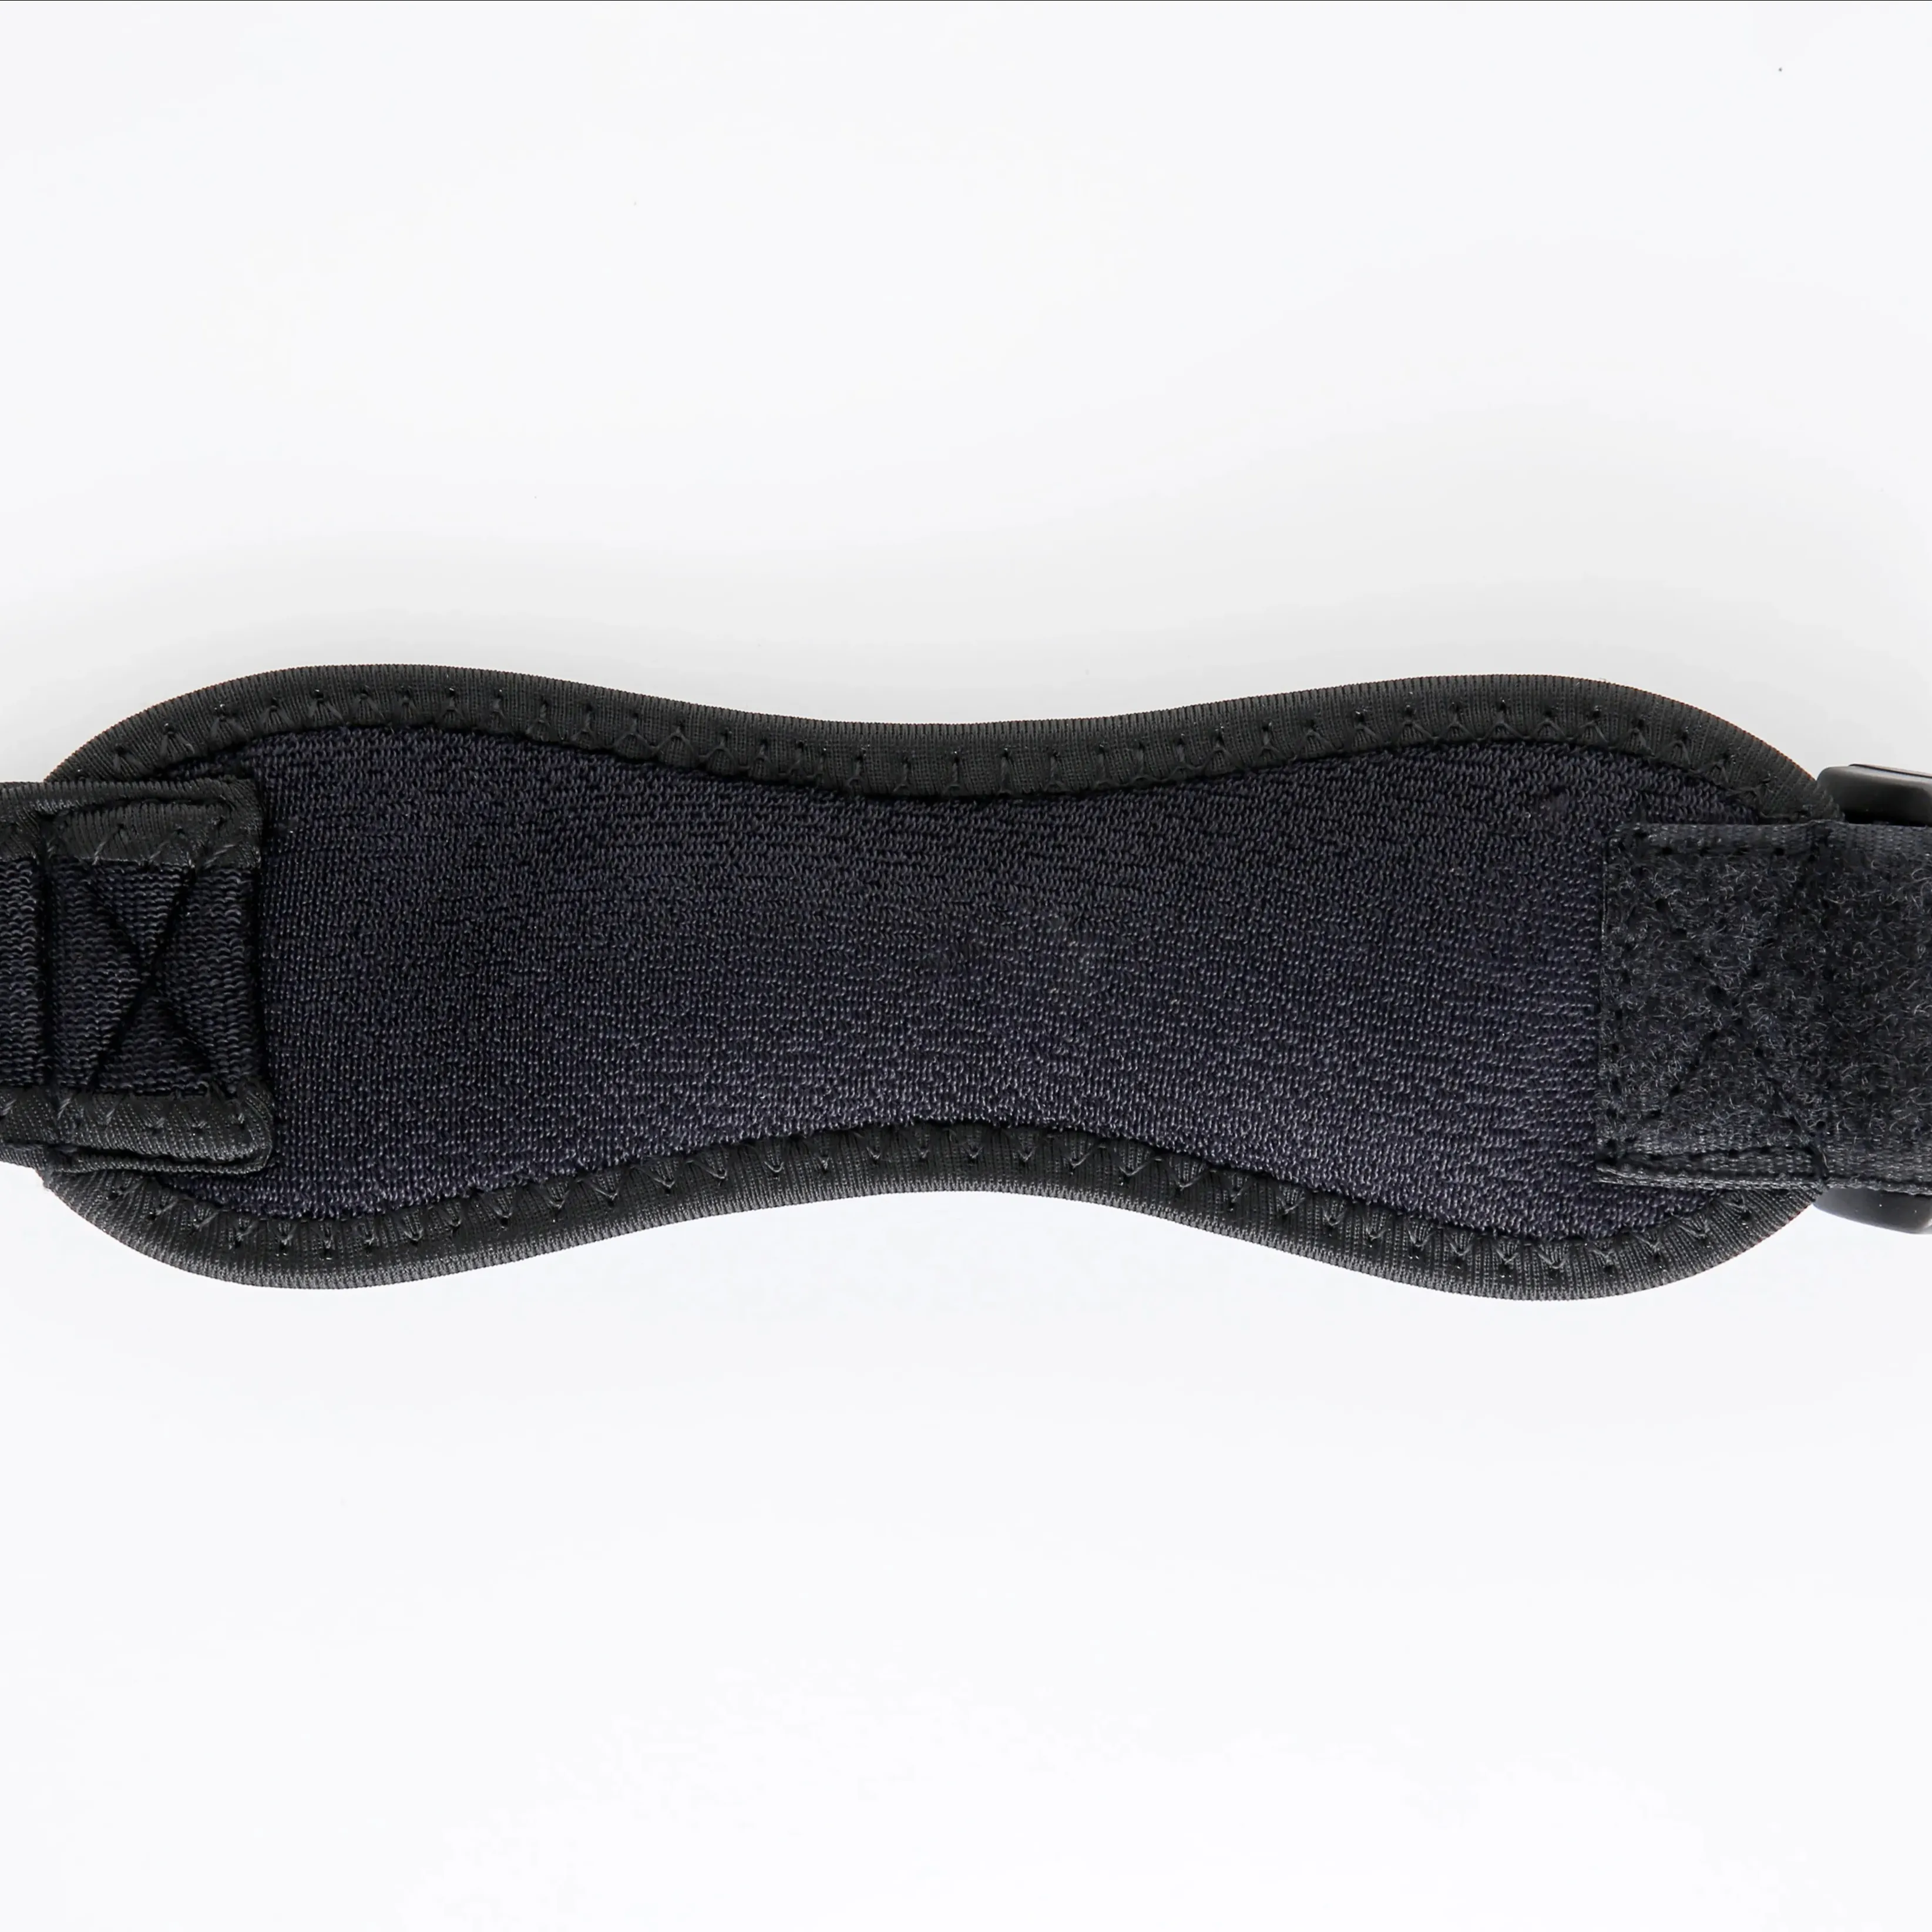 Los fabricantes suministran cinturón de rótula, rodillera transpirable, rodillera deportiva para correr, rodillera que absorbe los golpes, palmaditas de presión